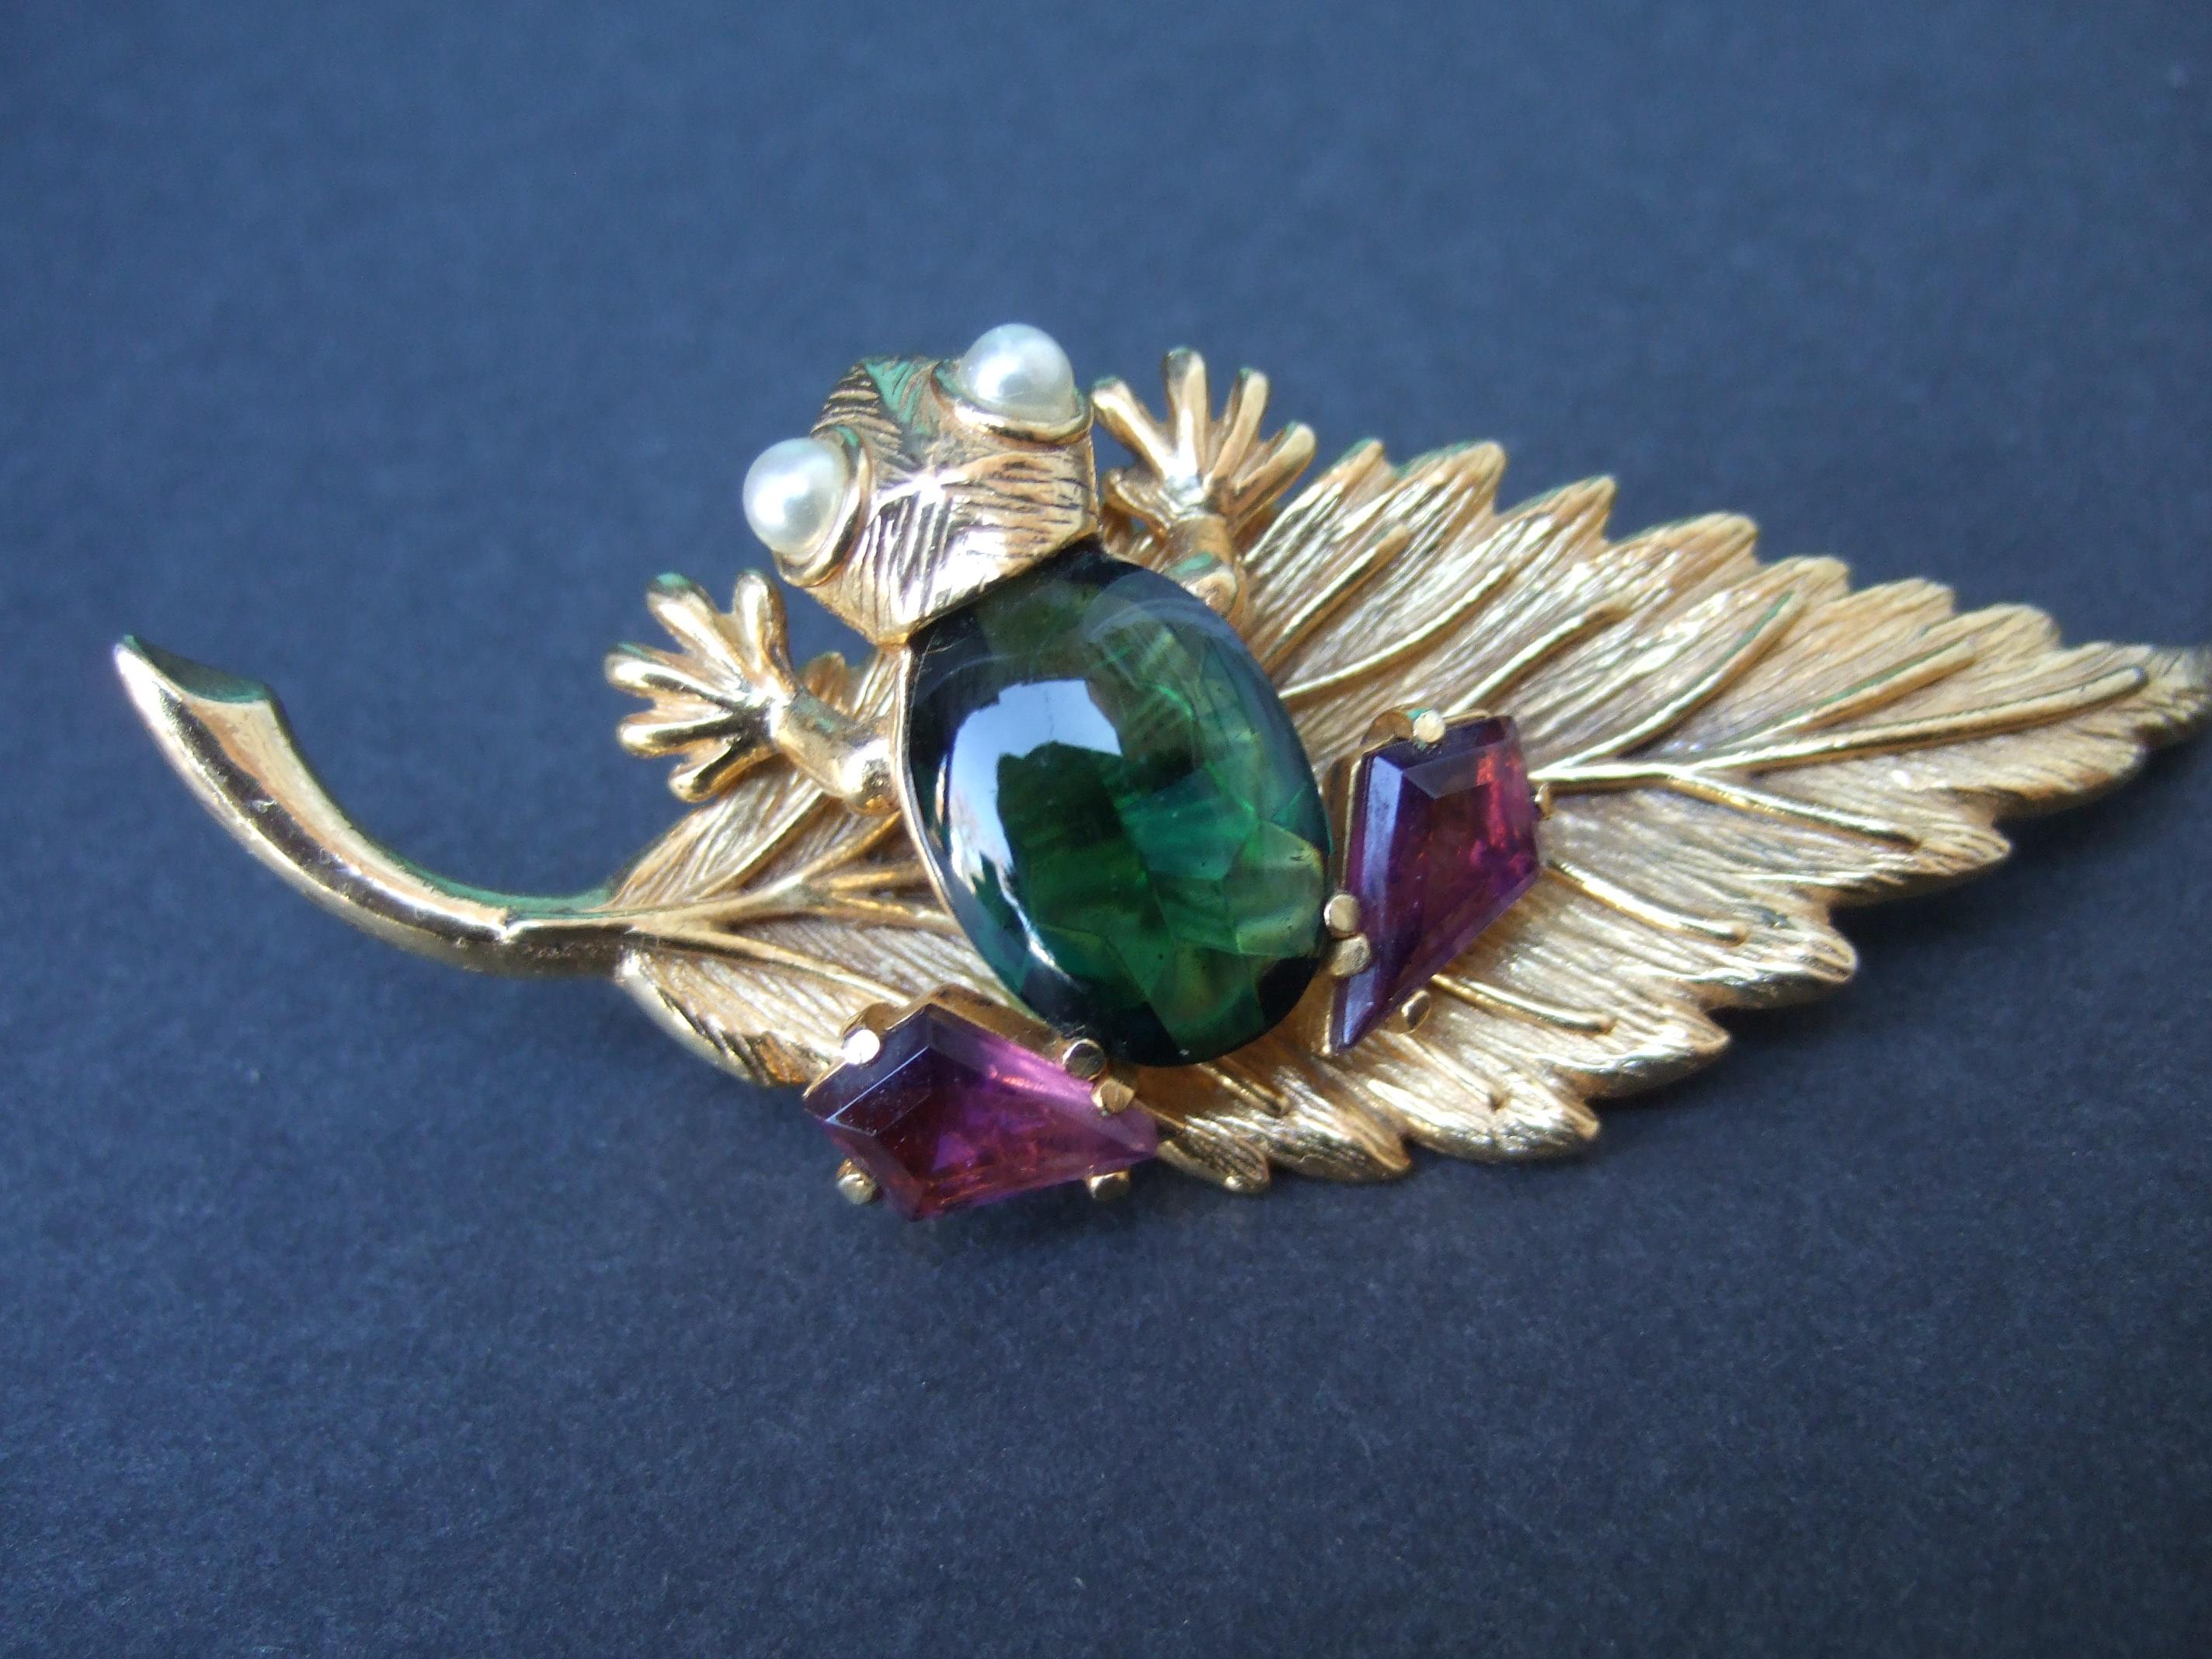 SCHIAPARELLI Seltene charmante Froschbrosche mit Juwelen um 1960
Die einzigartige Brosche ist mit einem bezaubernden Frosch gestaltet, der auf einer 
auf einem vergoldeten Lilienblatt aus Metall

Der Frosch ist mit einem glatten grünen Glascabochon